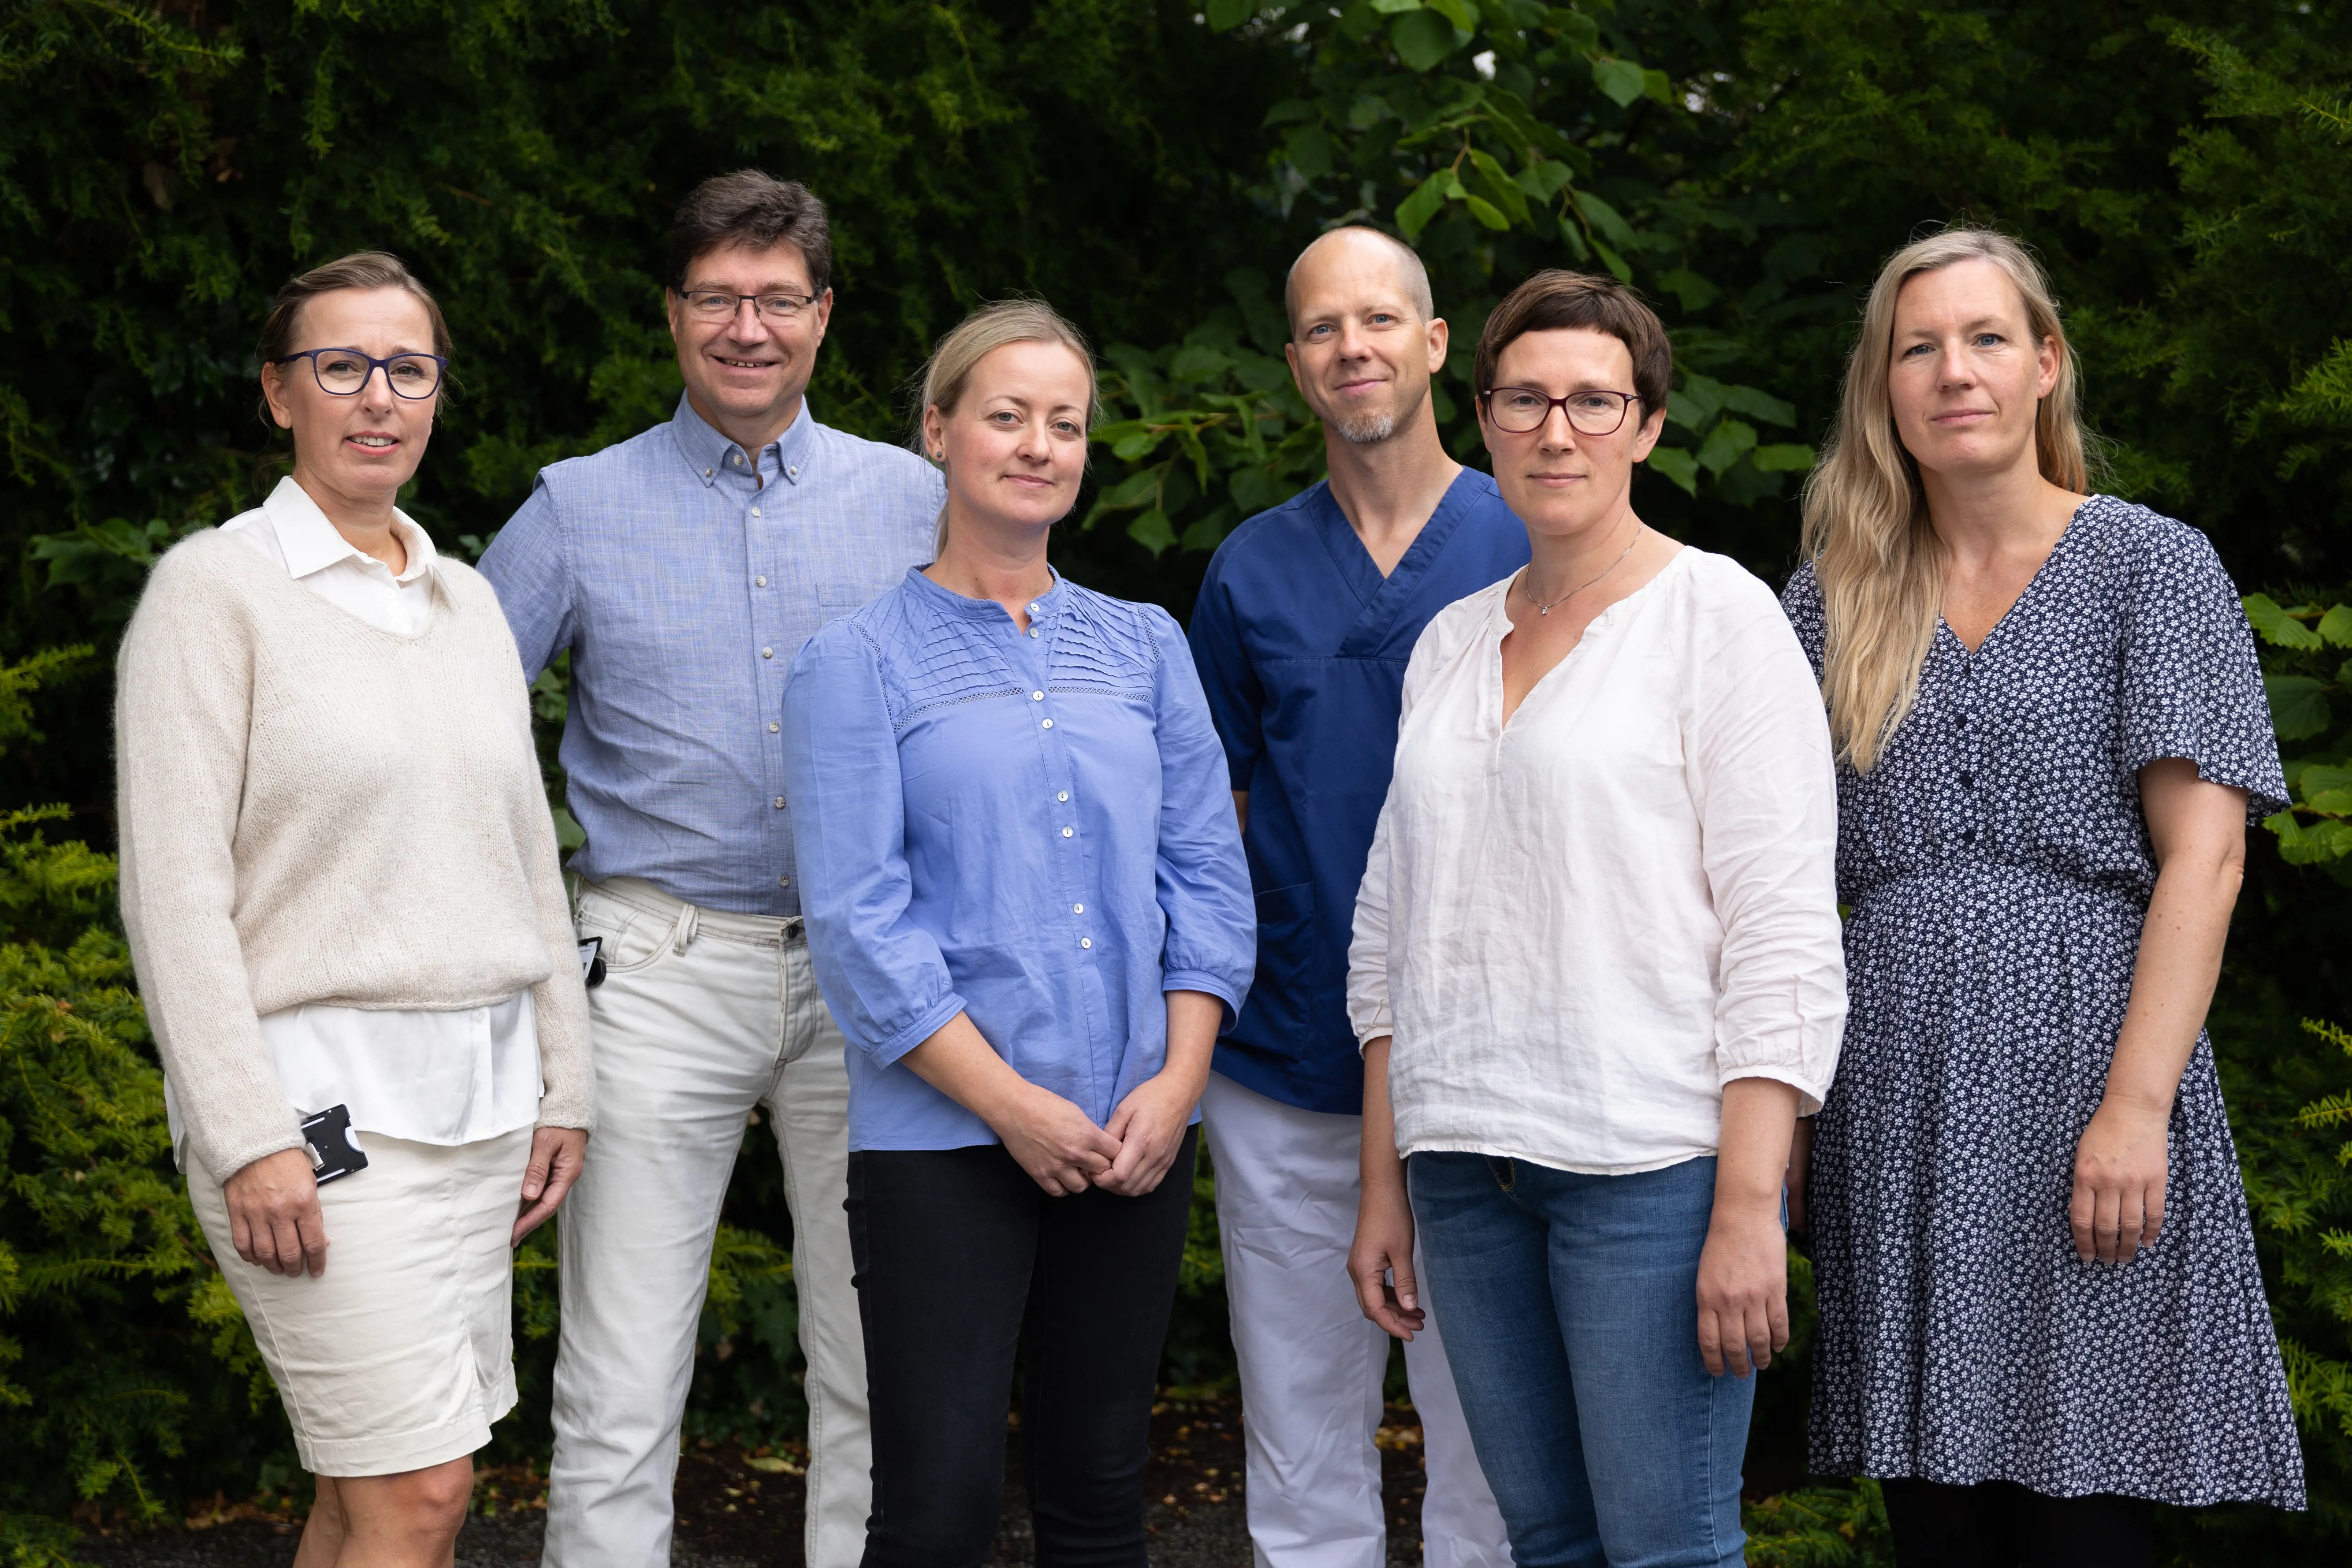 Barnepalliativt team (f.v.): Jorunn Søraas, Alf Bjørnstad, Sissel Harlo, Johan Aske Lund, Ann Marit Gilje, Øyvor Gripsgård Bergs